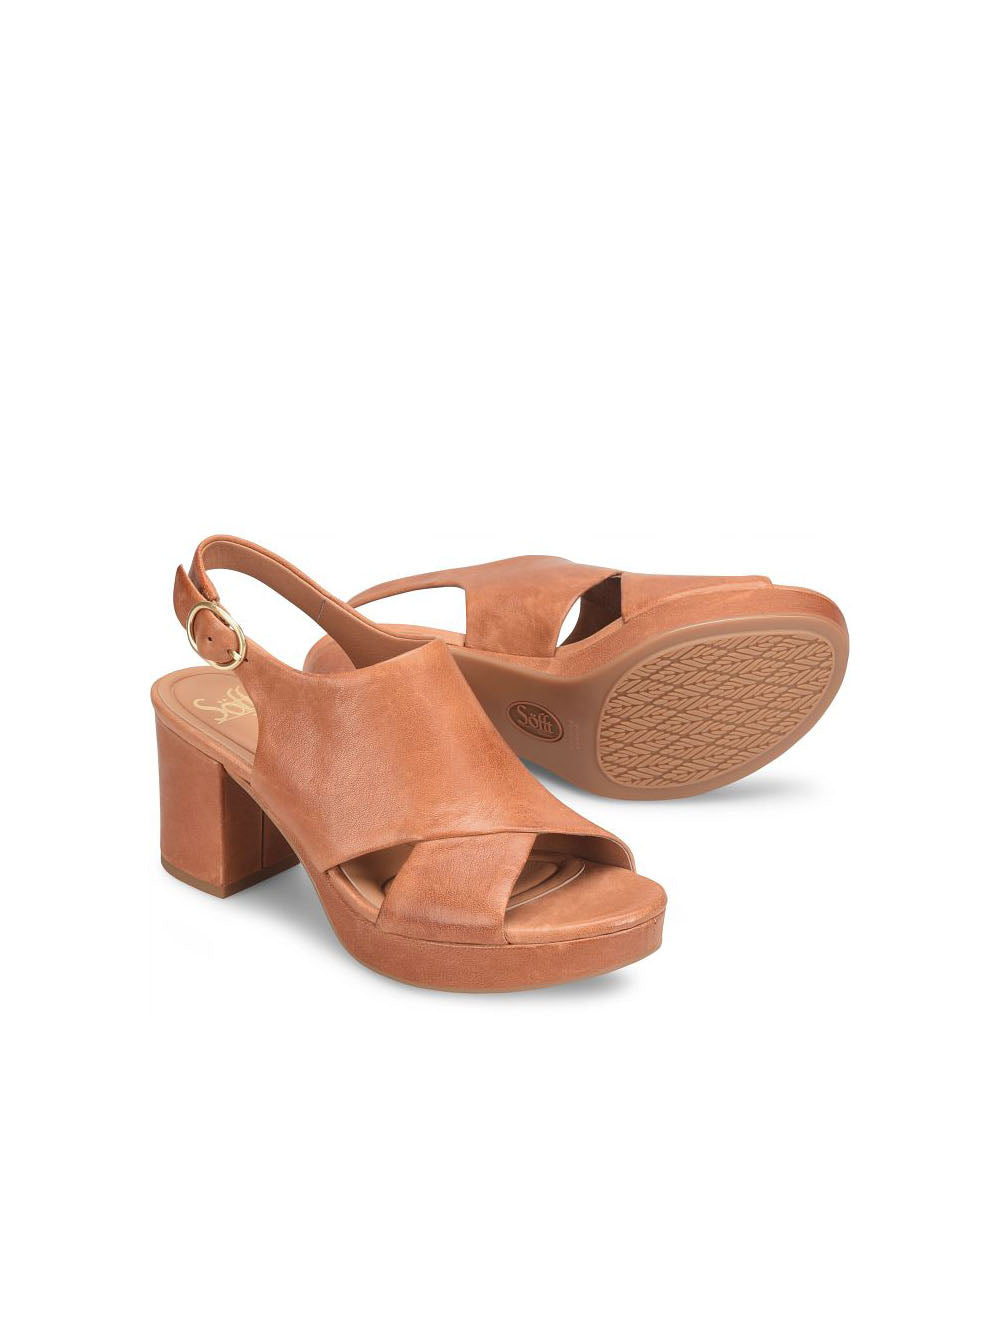 sofft shoes liv platform slingback sandal in luggage tan